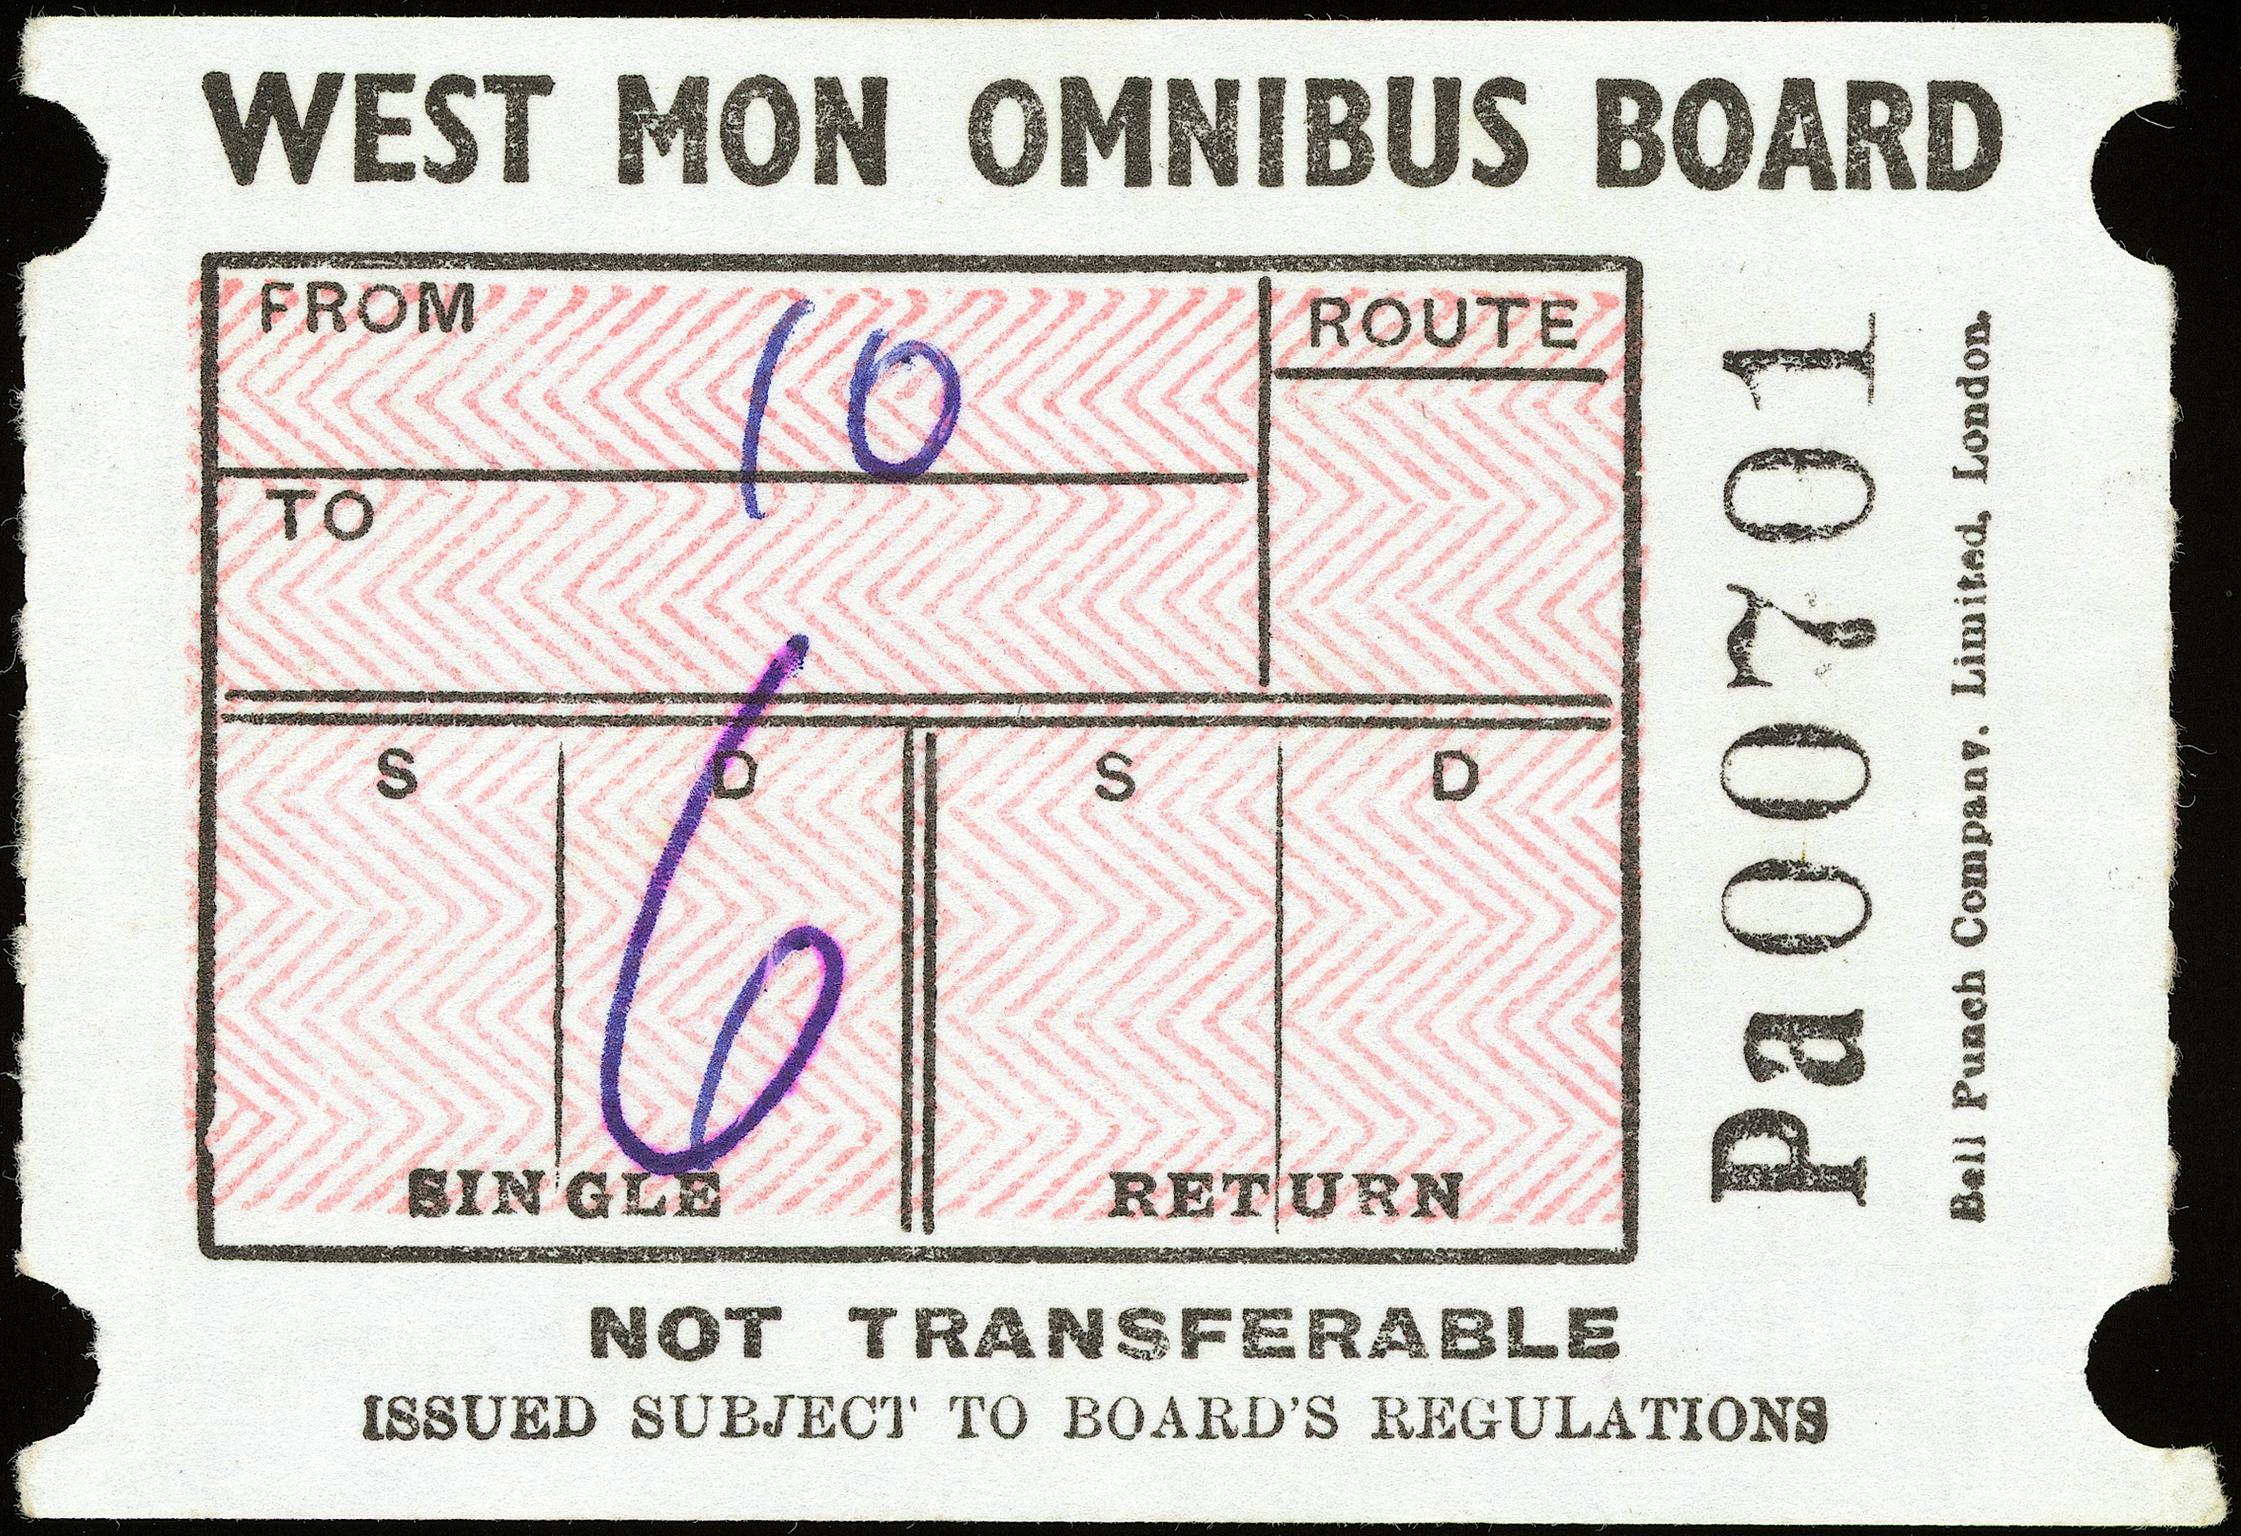 West Mon. Omnibus Board bus ticket